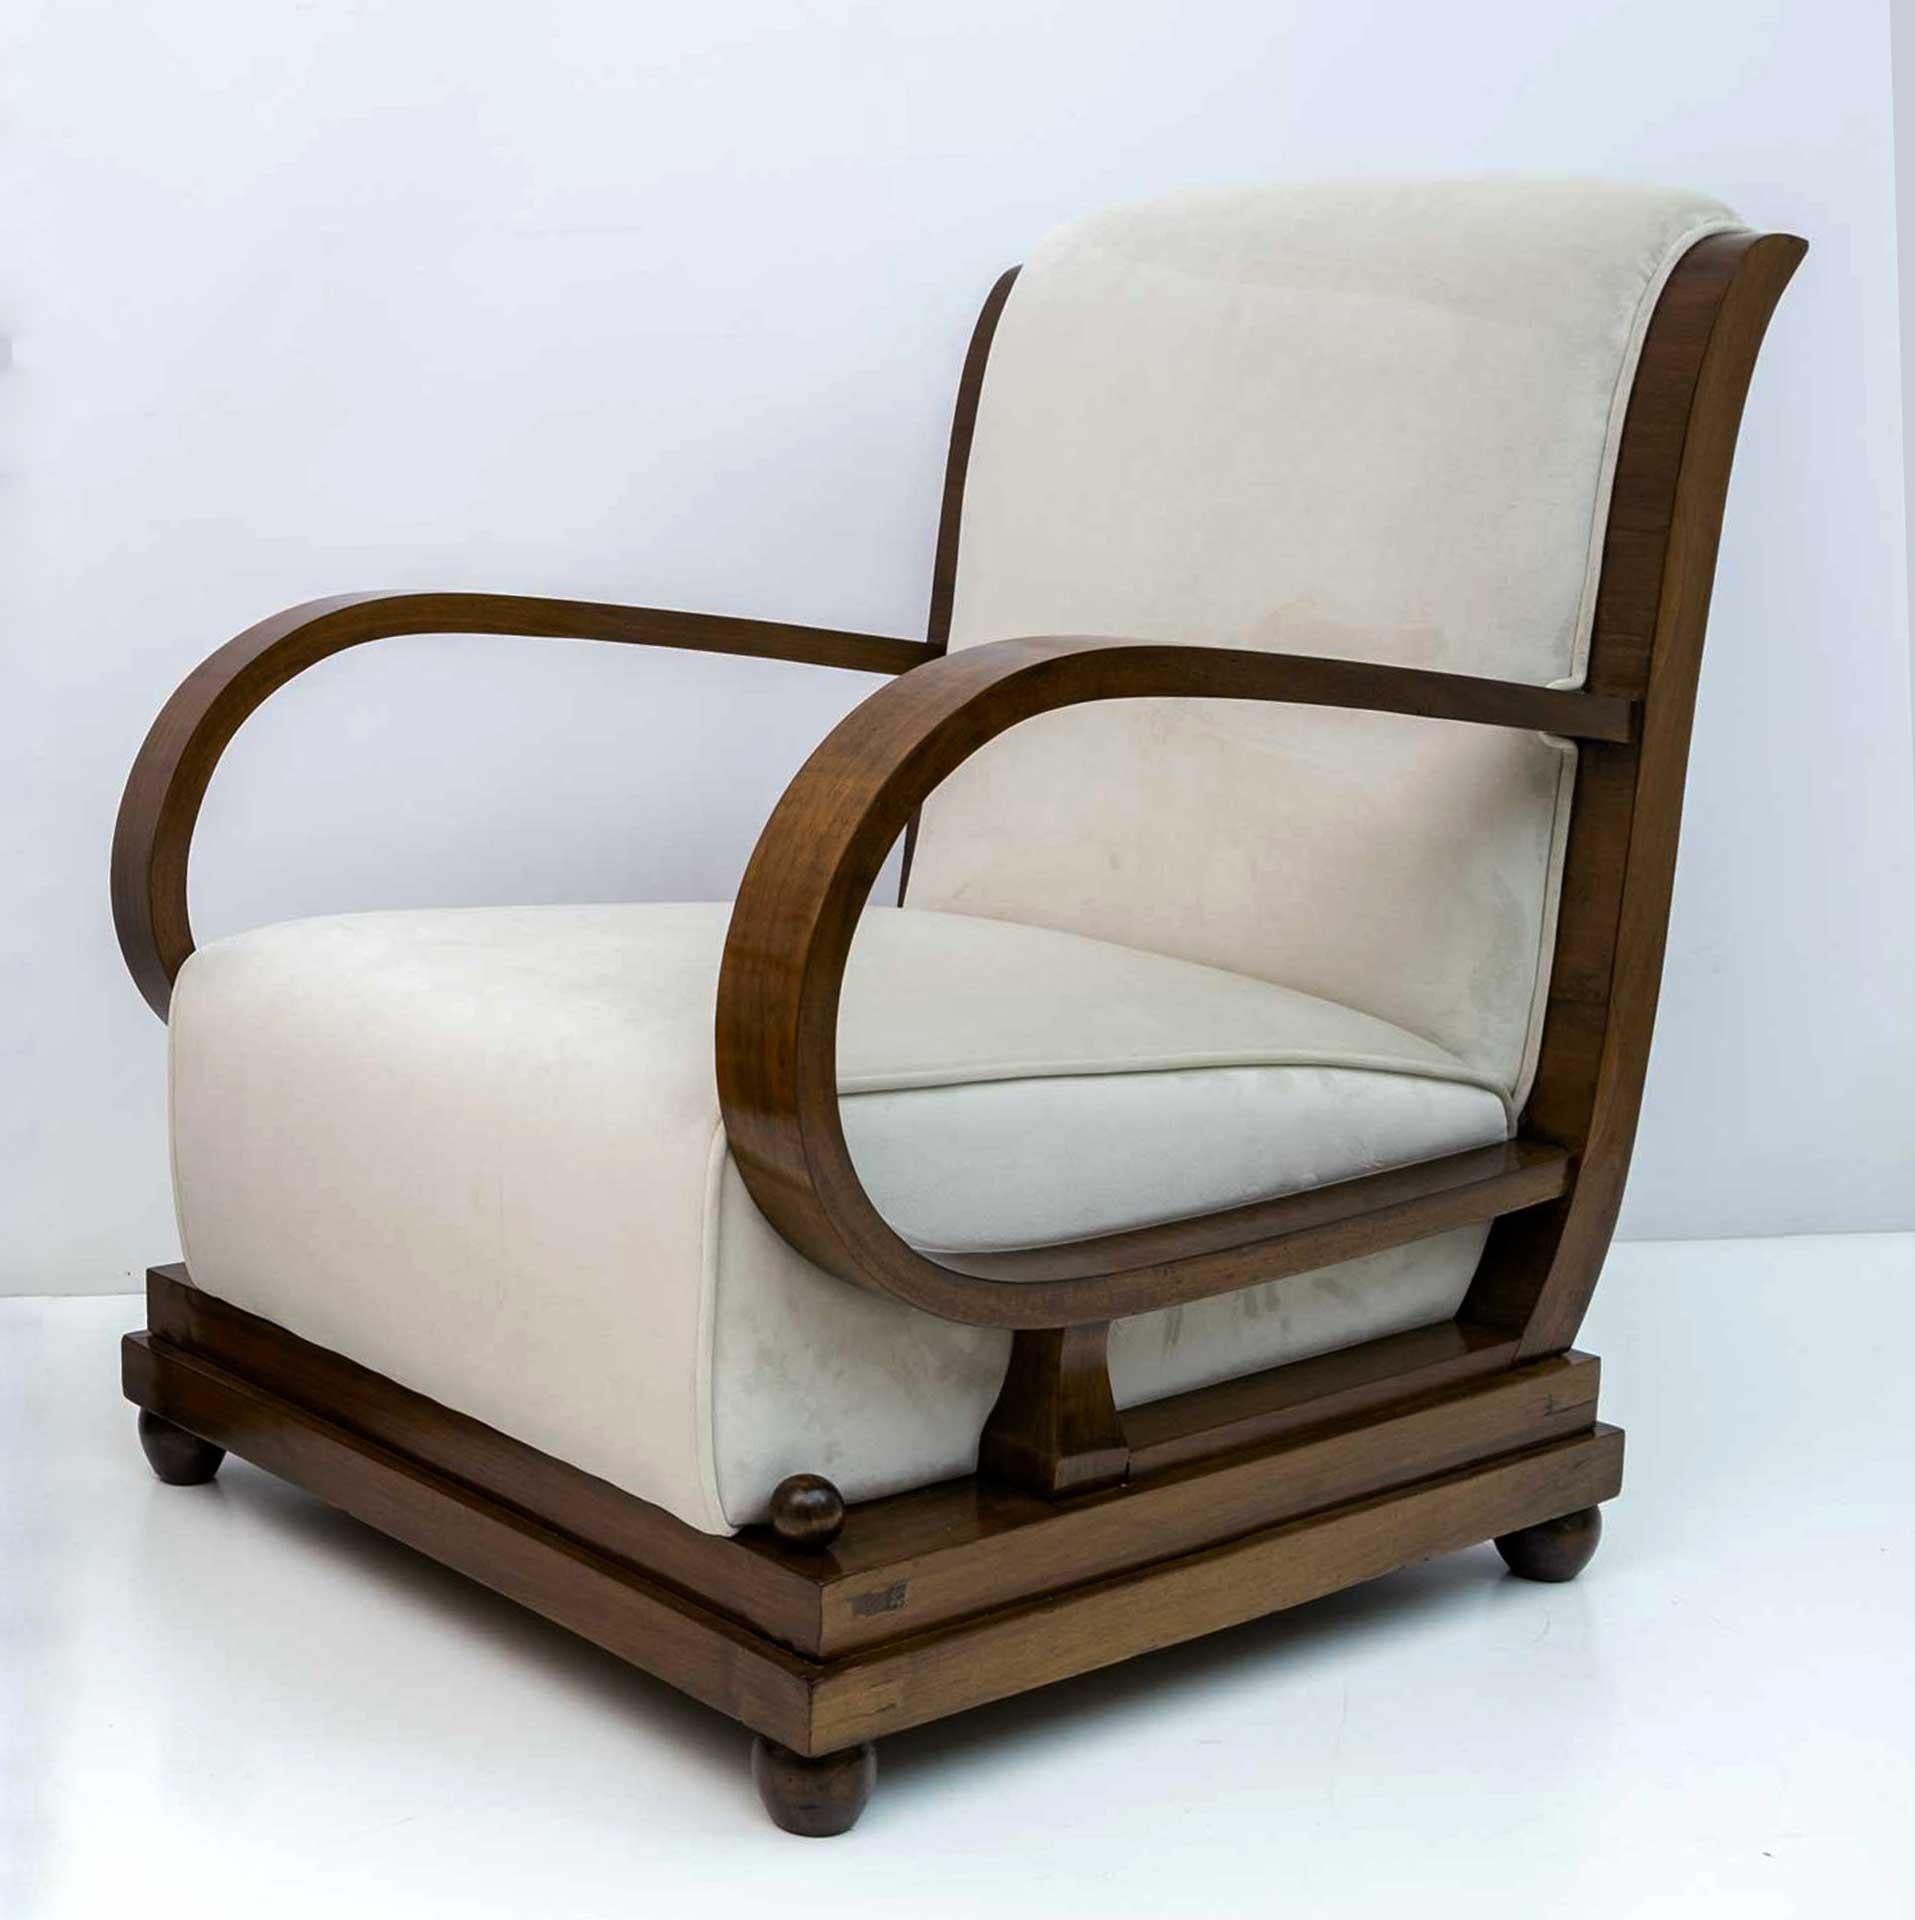 Sessel und Ottomane. Der Stuhl aus der frühen Art-déco-Periode in Norditalien ist mit Nussbaumholz und elfenbeinfarbenem Samt gepolstert. Die Rückenlehne ist anmutig geschwungen und verlängert sich, um die Krümmung der abgewinkelten Armlehnen zu